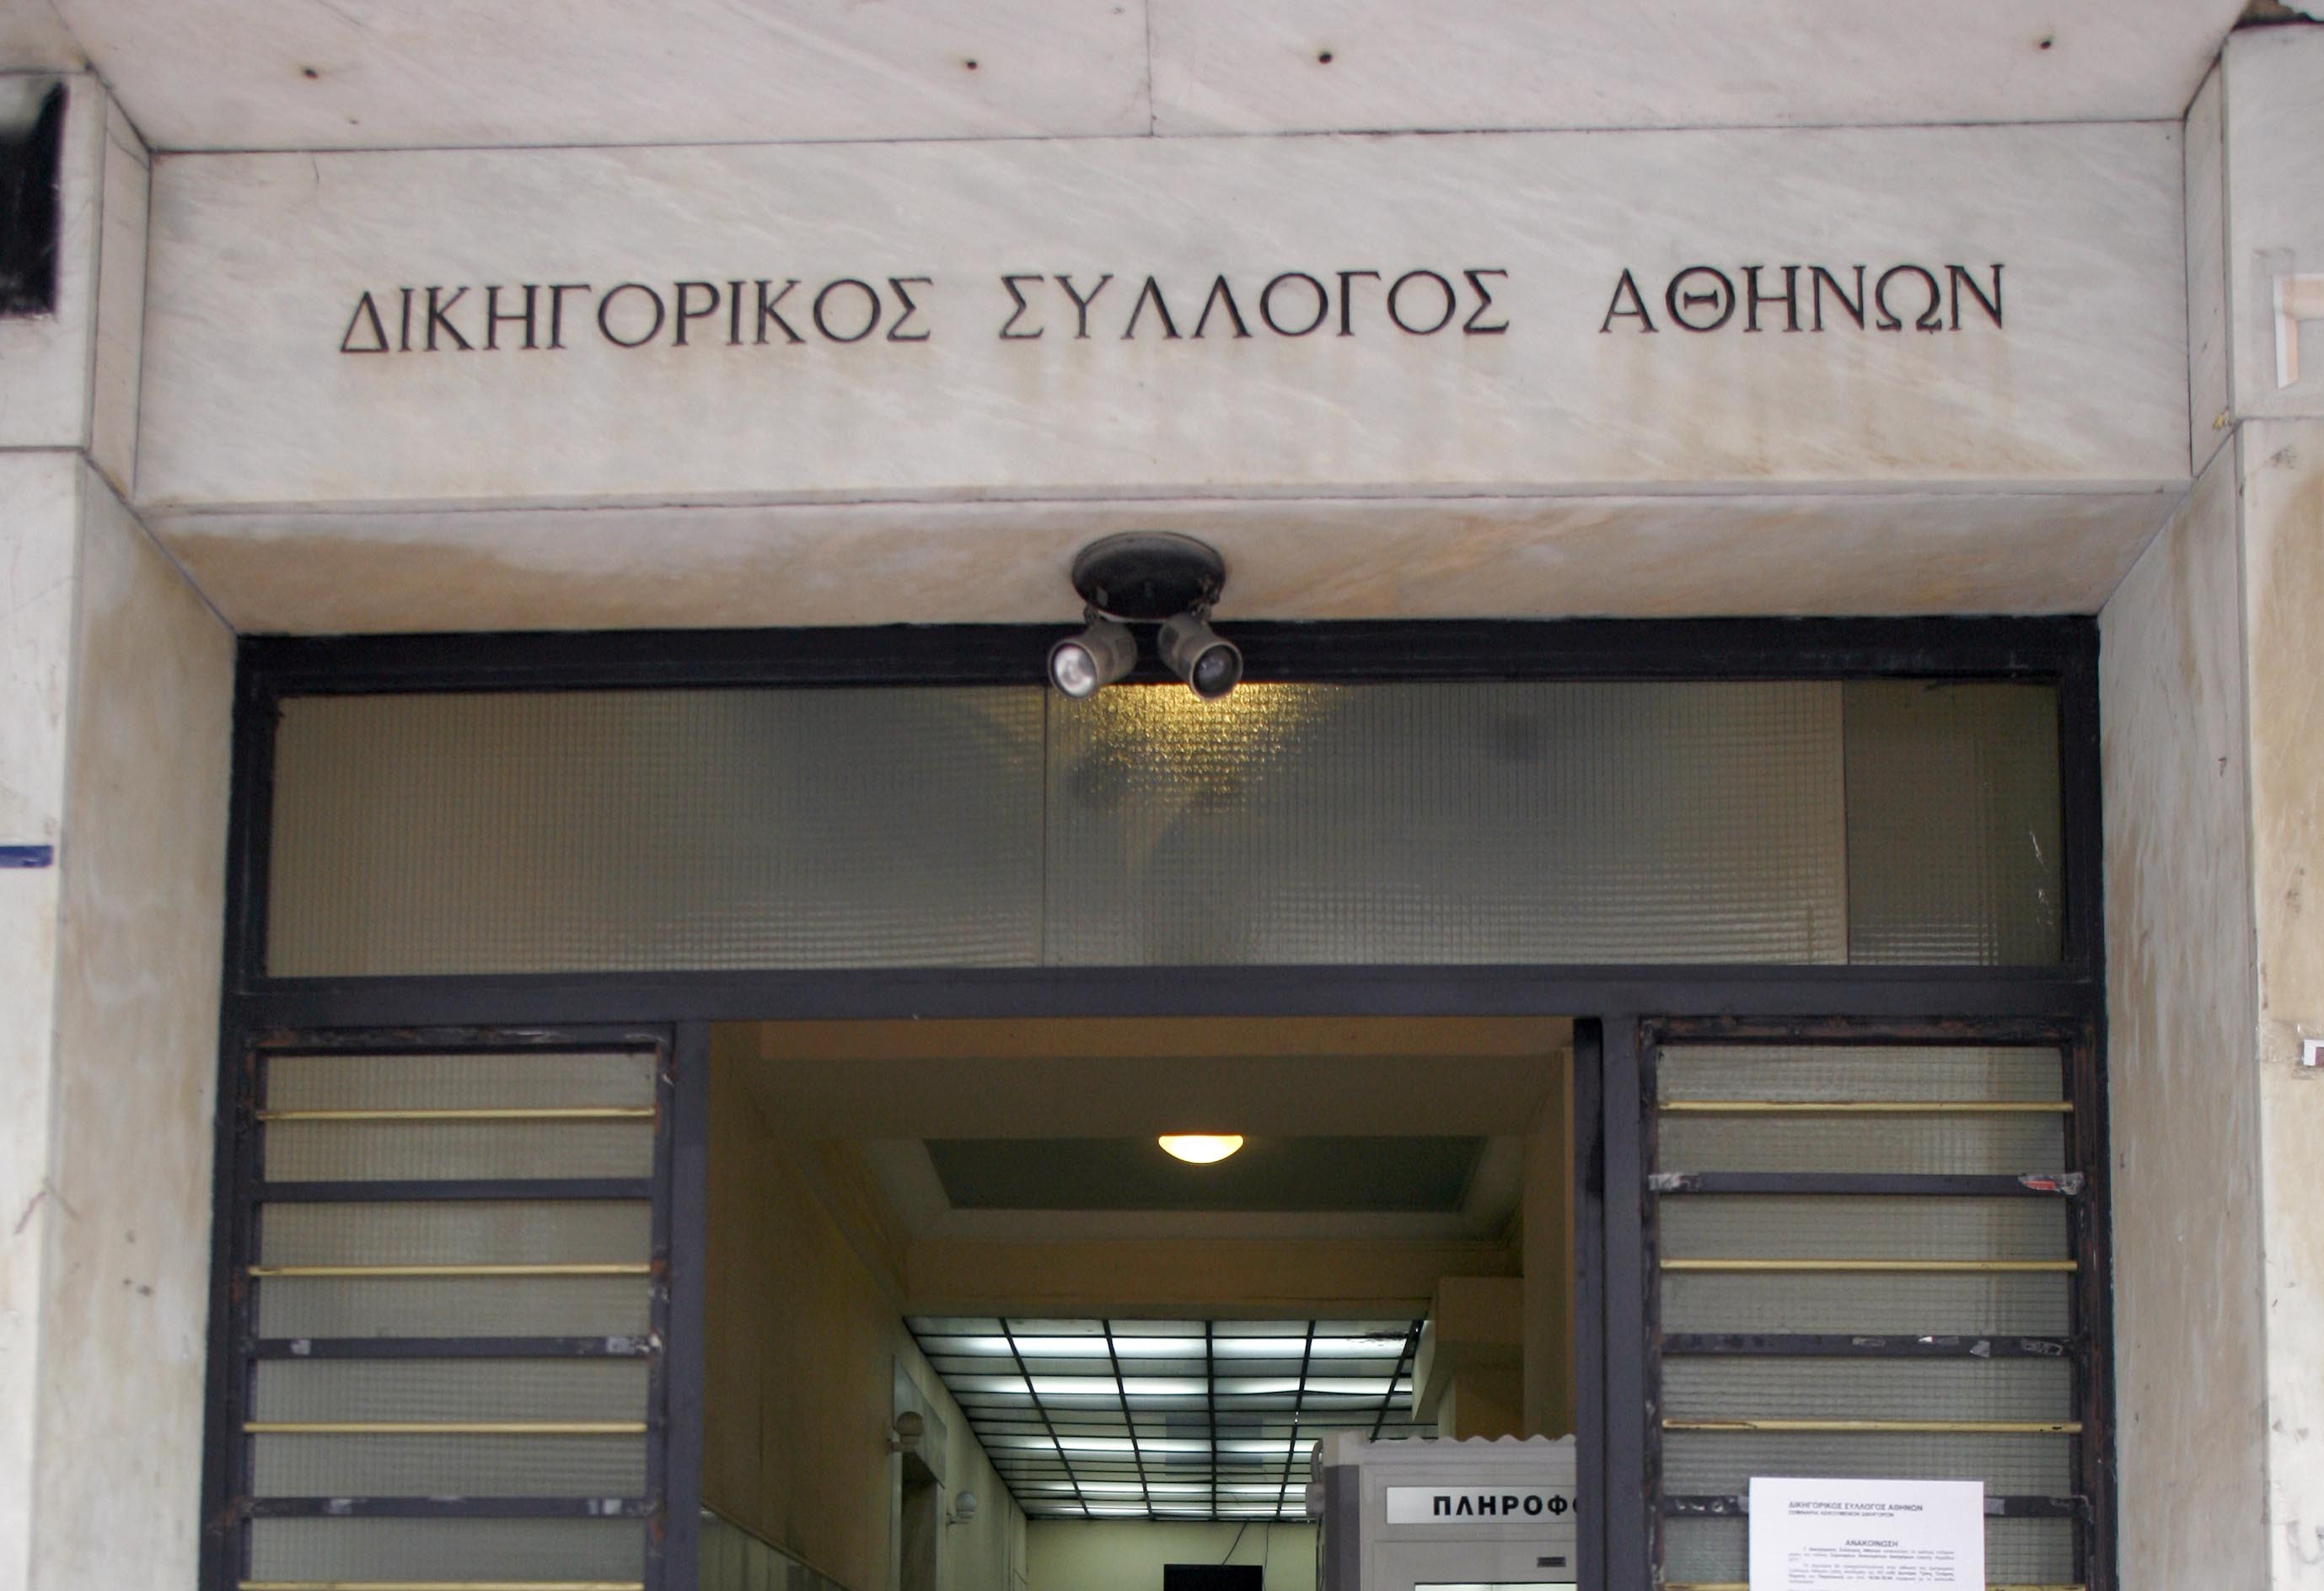 Έληξε η κατάληψη στον Δικηγορικό Σύλλογο Αθηνών